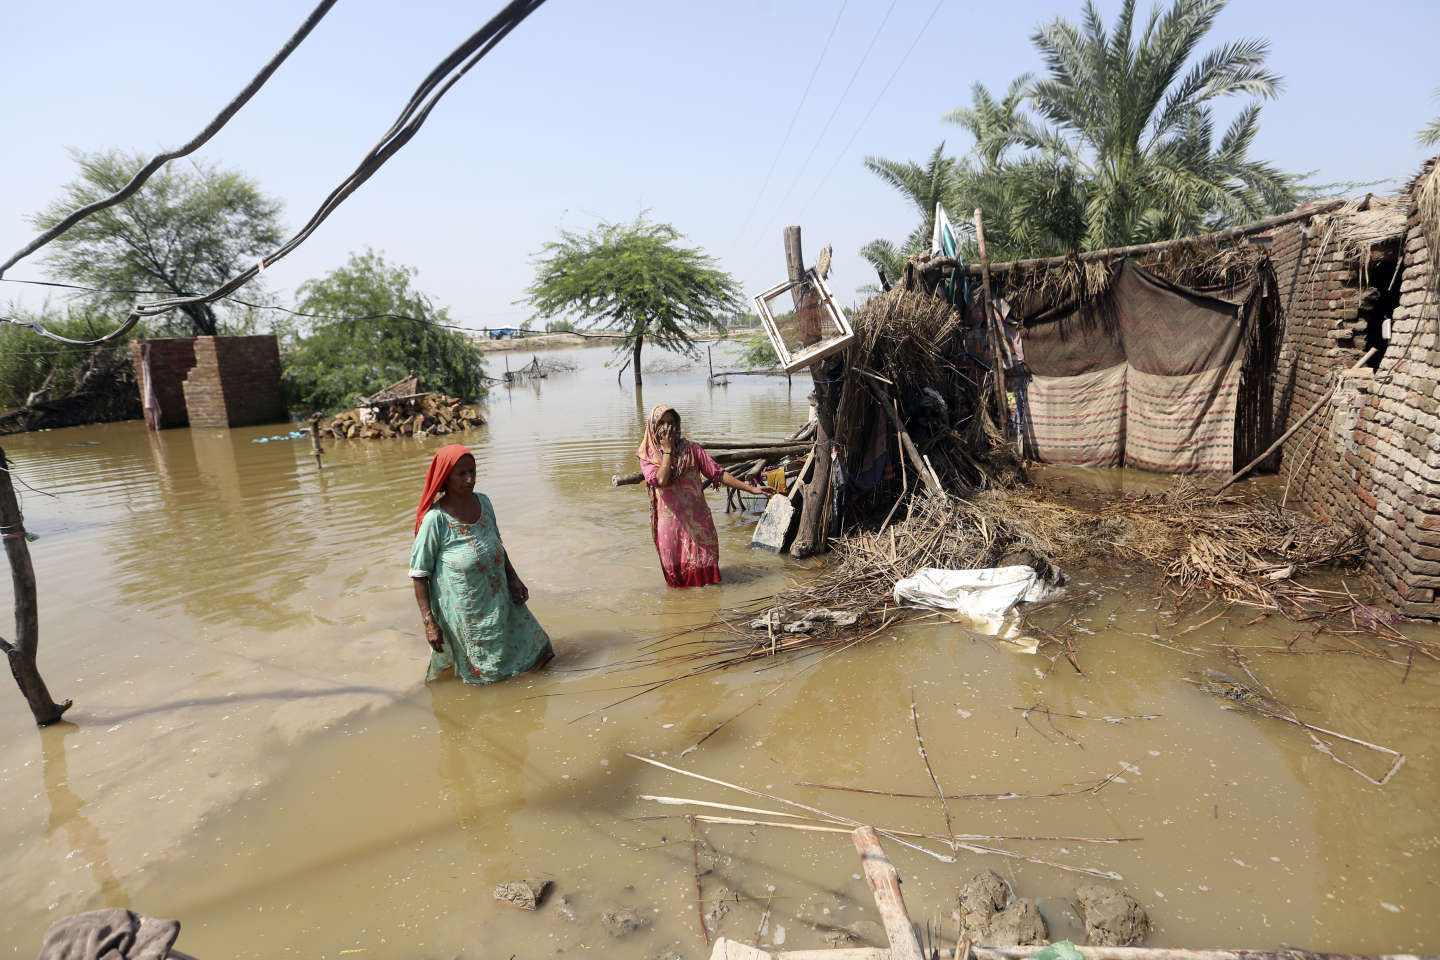 Au Pakistan, les images des inondations catastrophiques